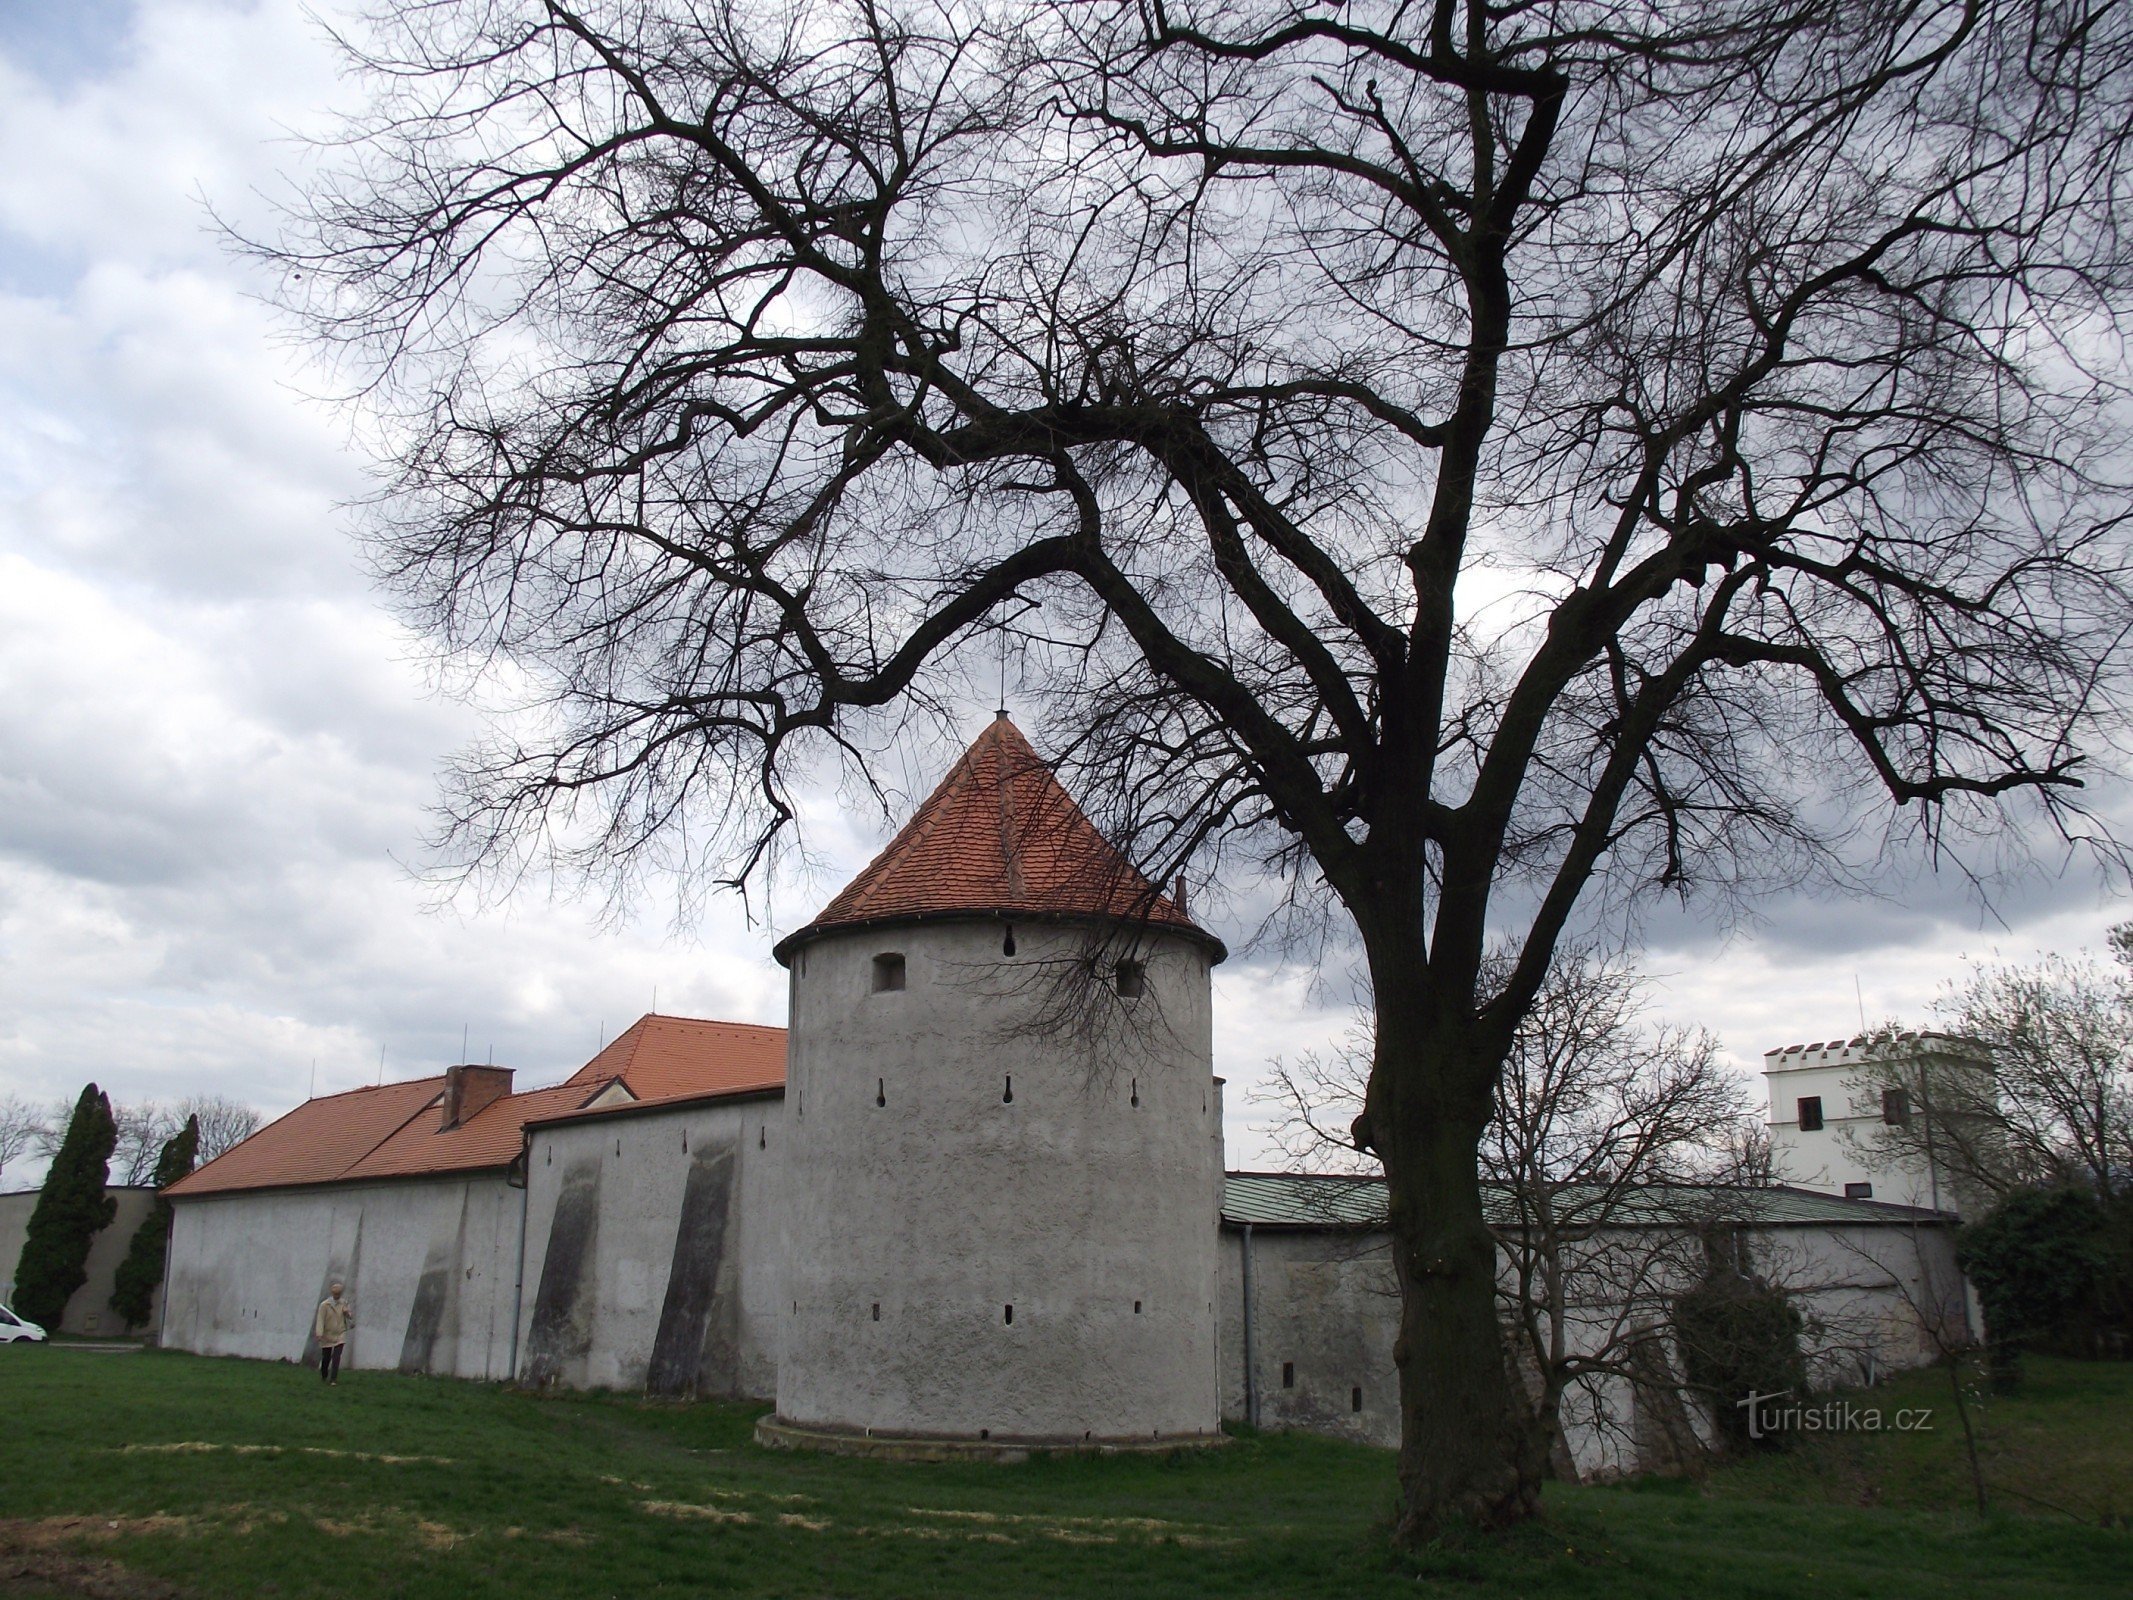 các công sự thành phố phía trên lâu đài được cho là trước đây lâu đài